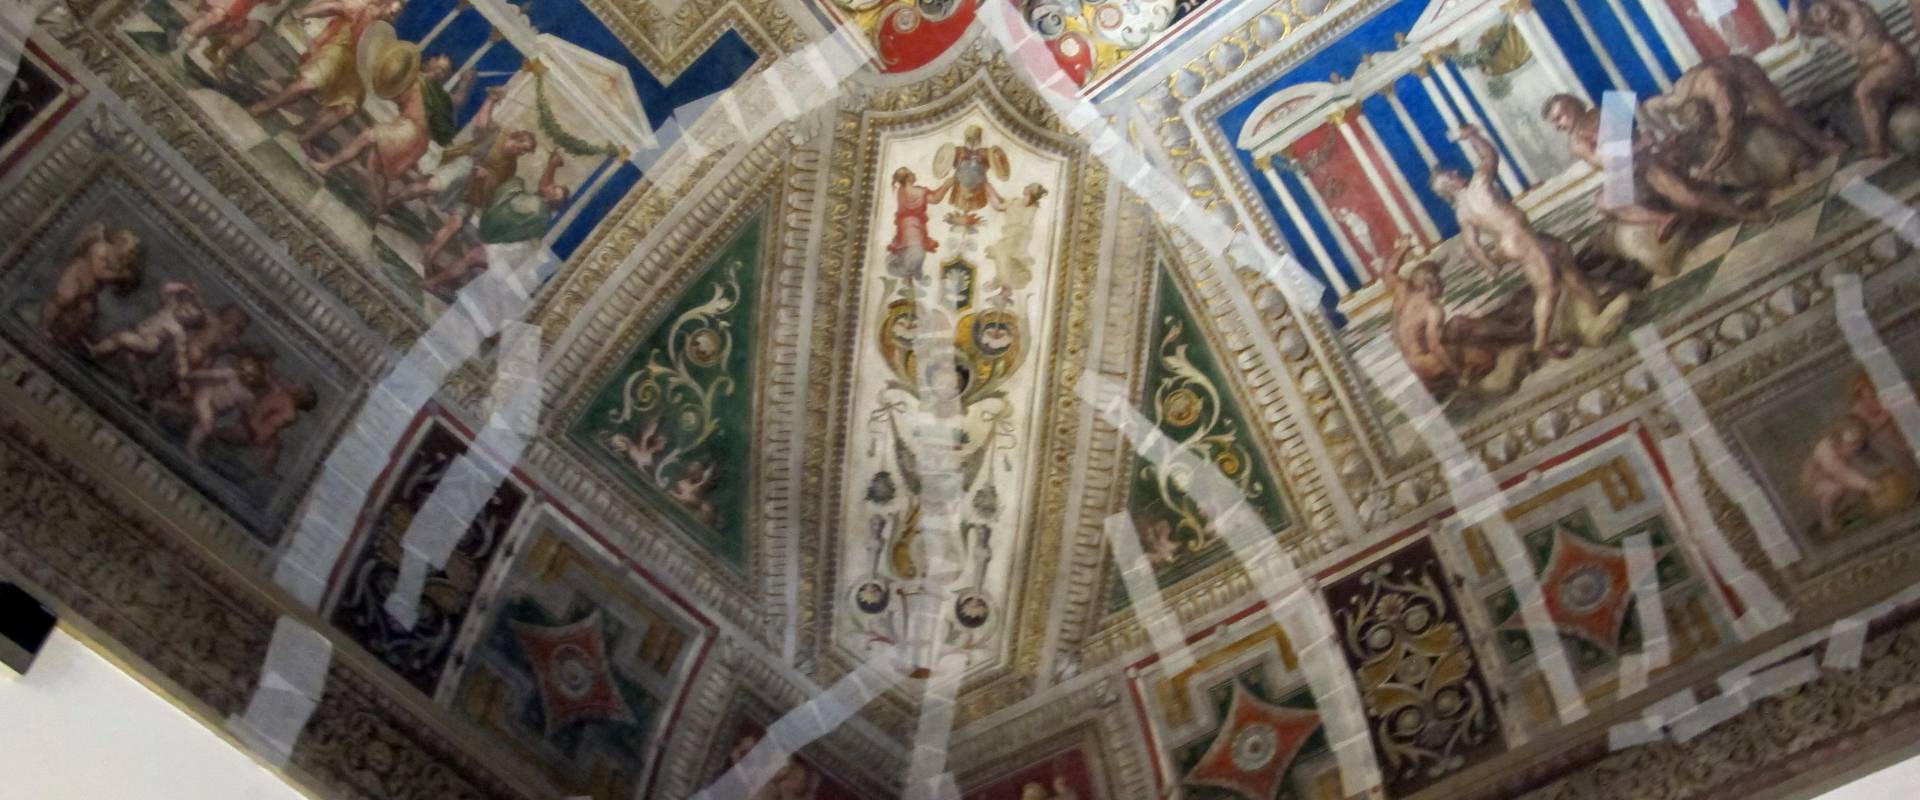 Castello estense di ferrara, int., saletta dei giochi, affreschi di bastianino e ludovico settevecchi (post 1570) 11 photo by Sailko